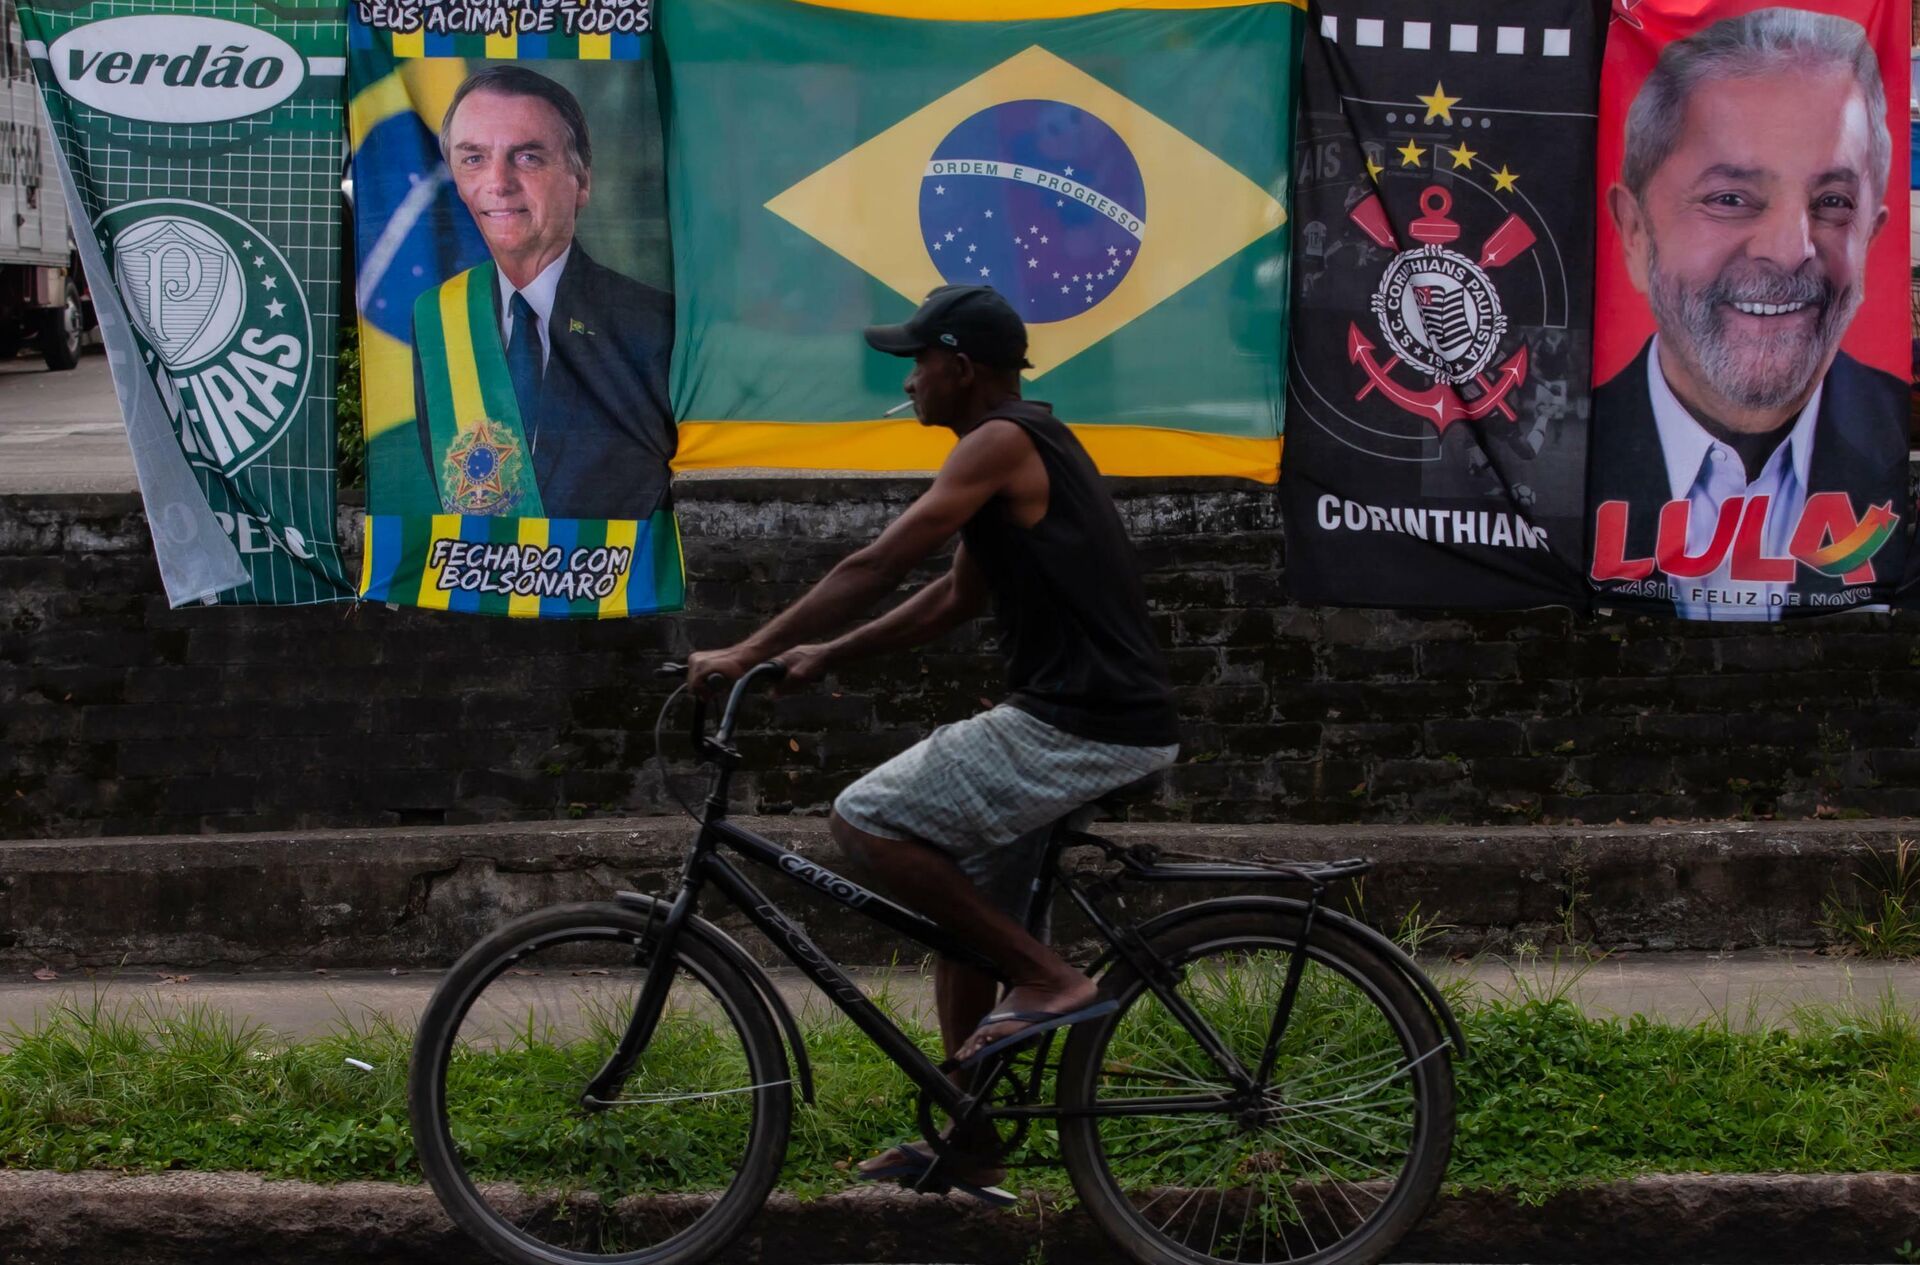 Ambulante vende bandeiras de Jair Bolsonaro e Lula no mesmo varal na cidade de Santos, em São Paulo, em 25 de janeiro de 2022 - Sputnik Brasil, 1920, 24.03.2022